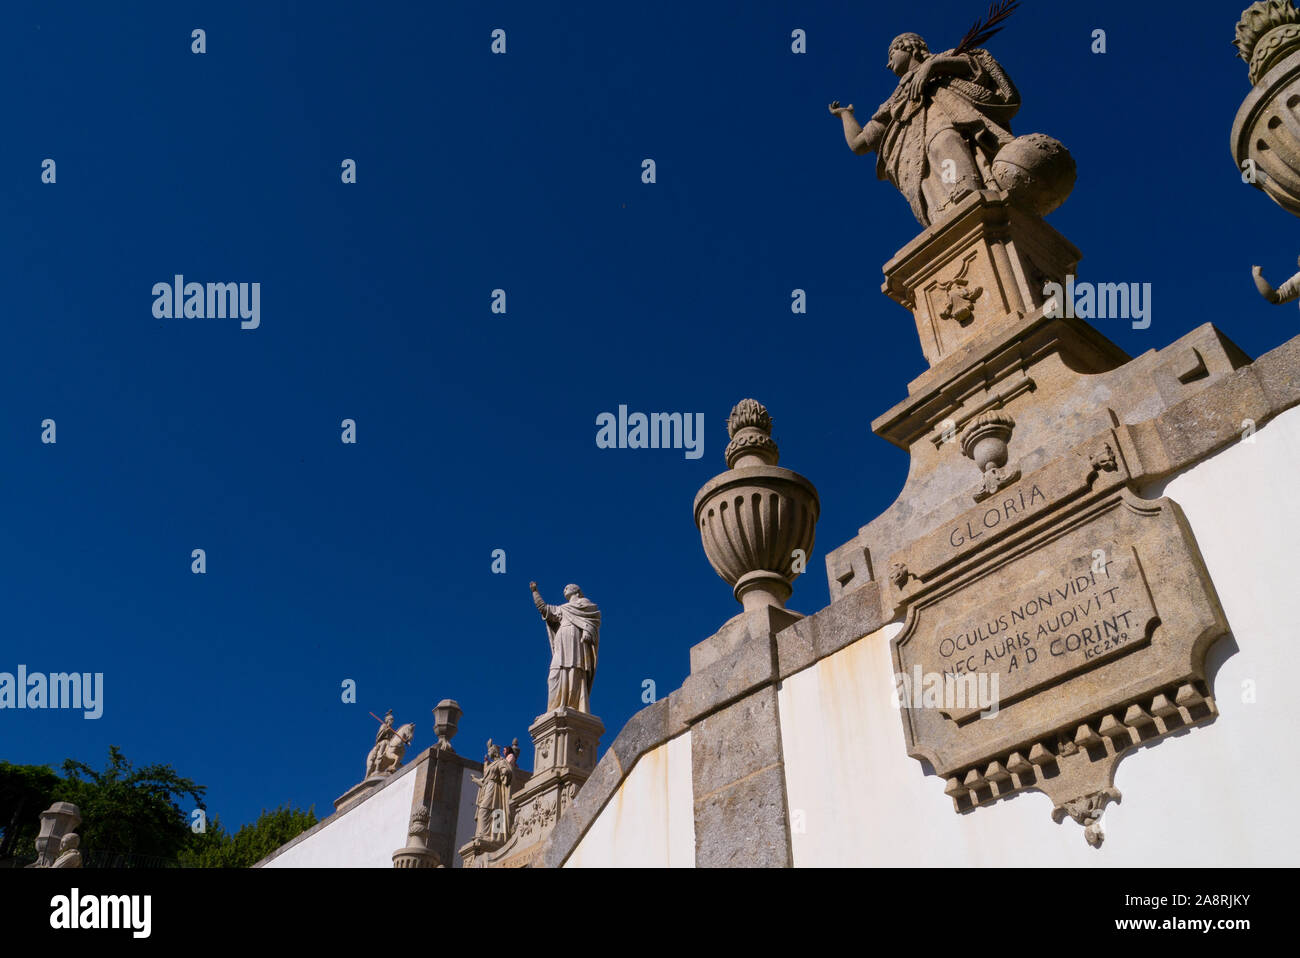 Statues at Bom Jesus in Braga Portugal Stock Photo